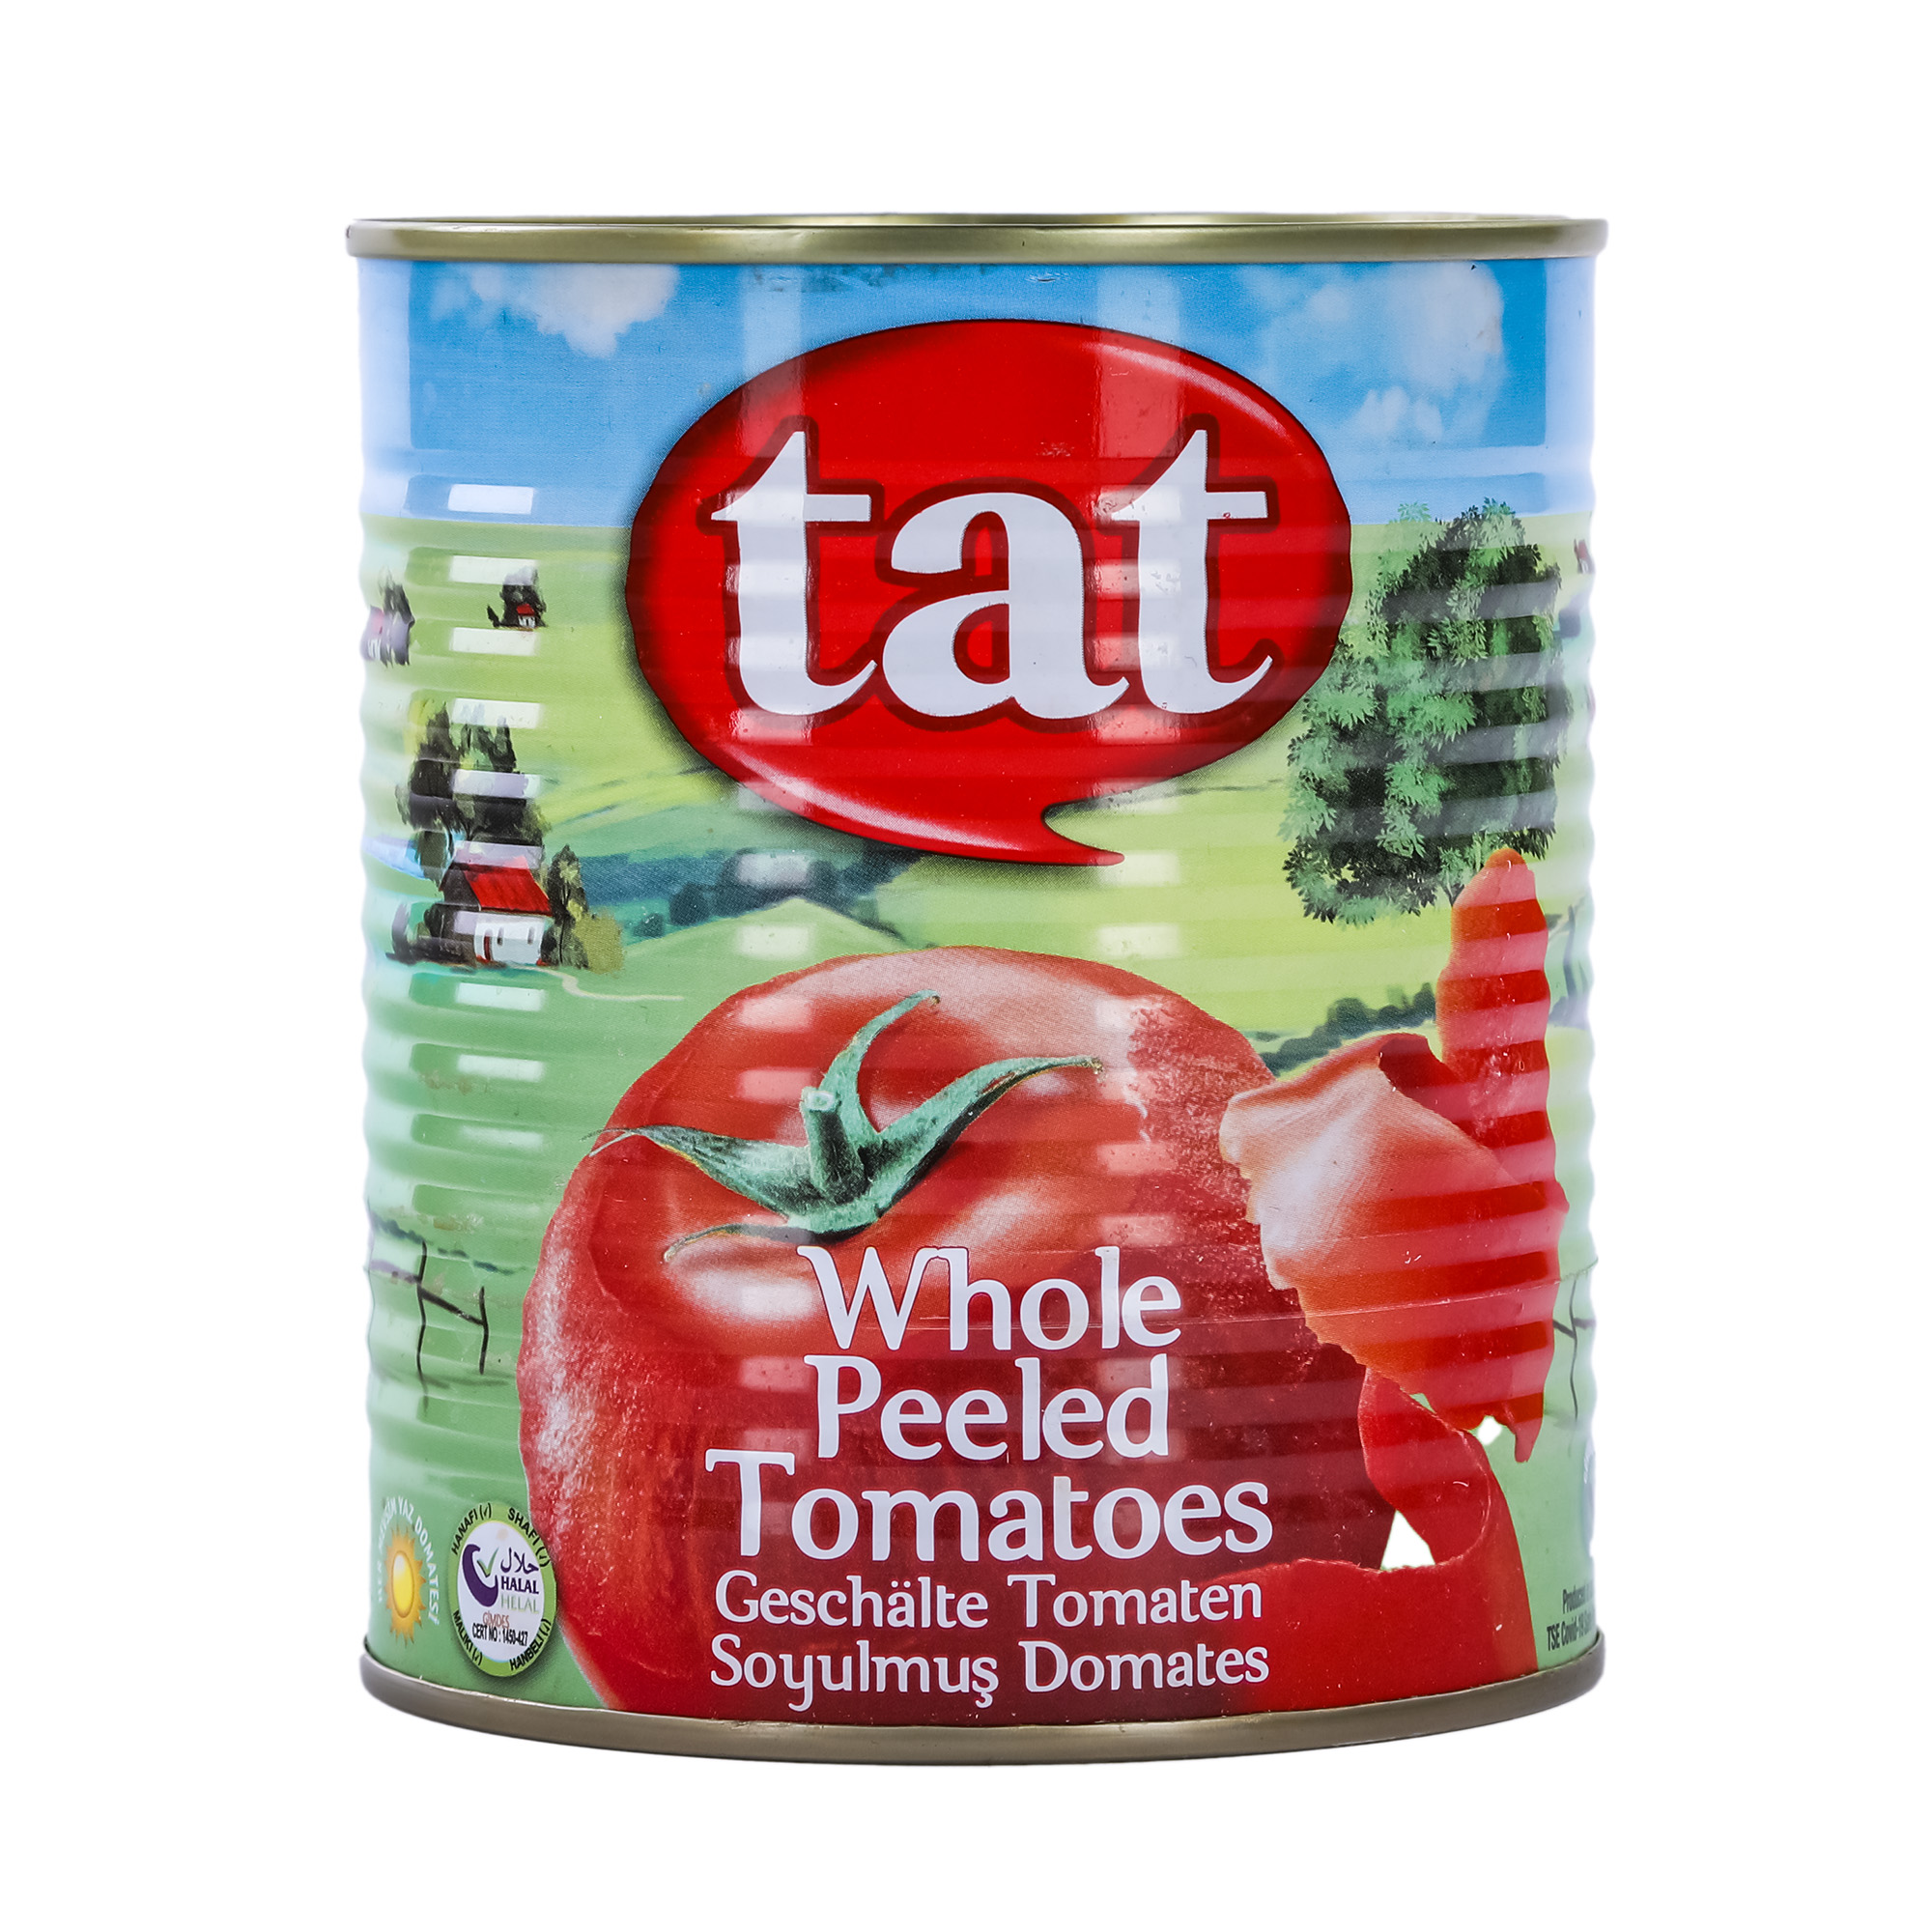 Томаты TAT очищенные 800 г томаты вяленые romatto с прованскими травами в масле 250 г